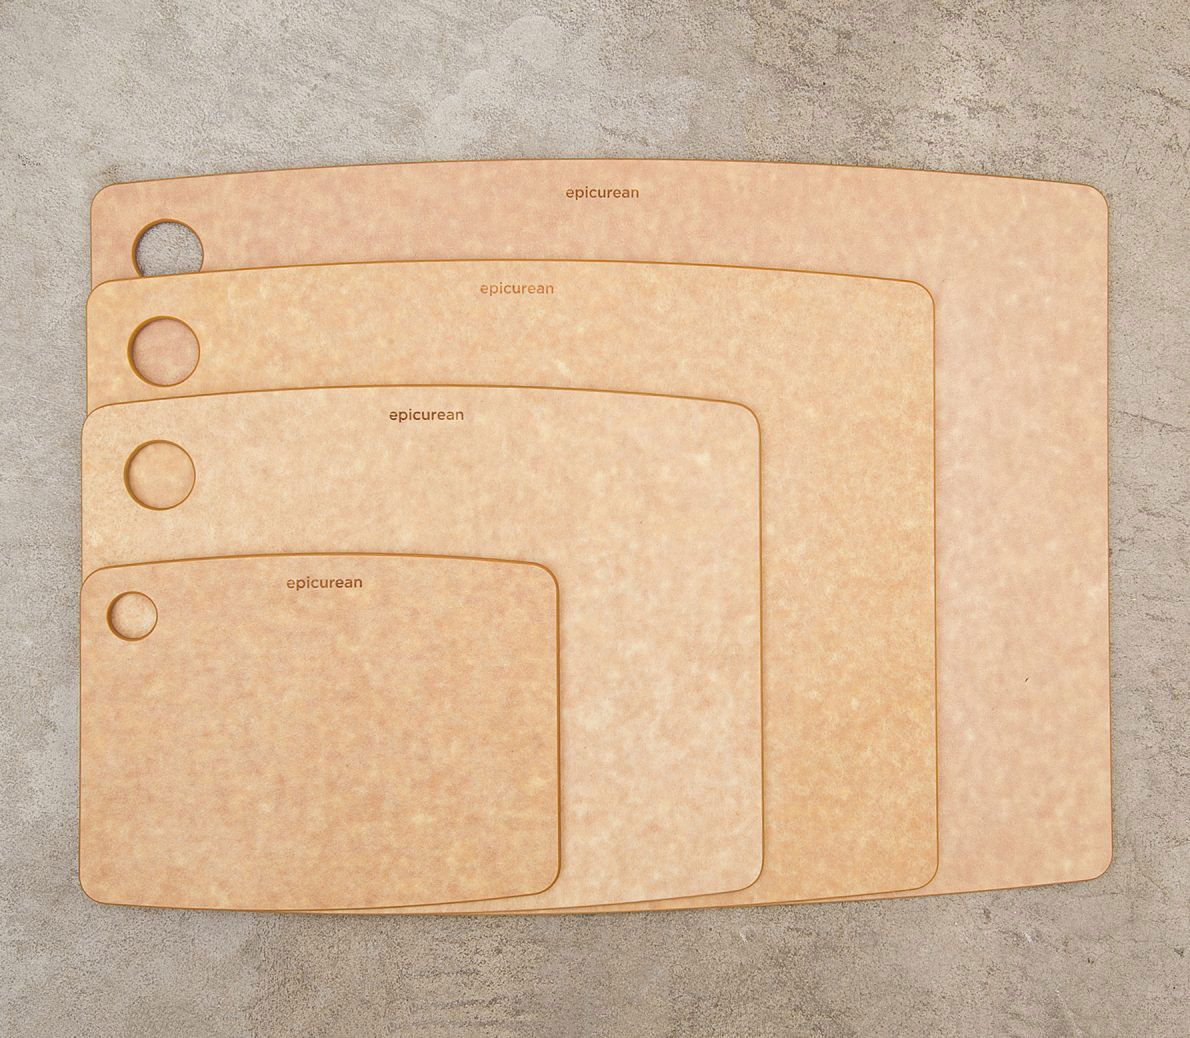 Epicurean Kitchen Series Wood Fiber Cutting Board, Natural, 8 inch x 6 inch